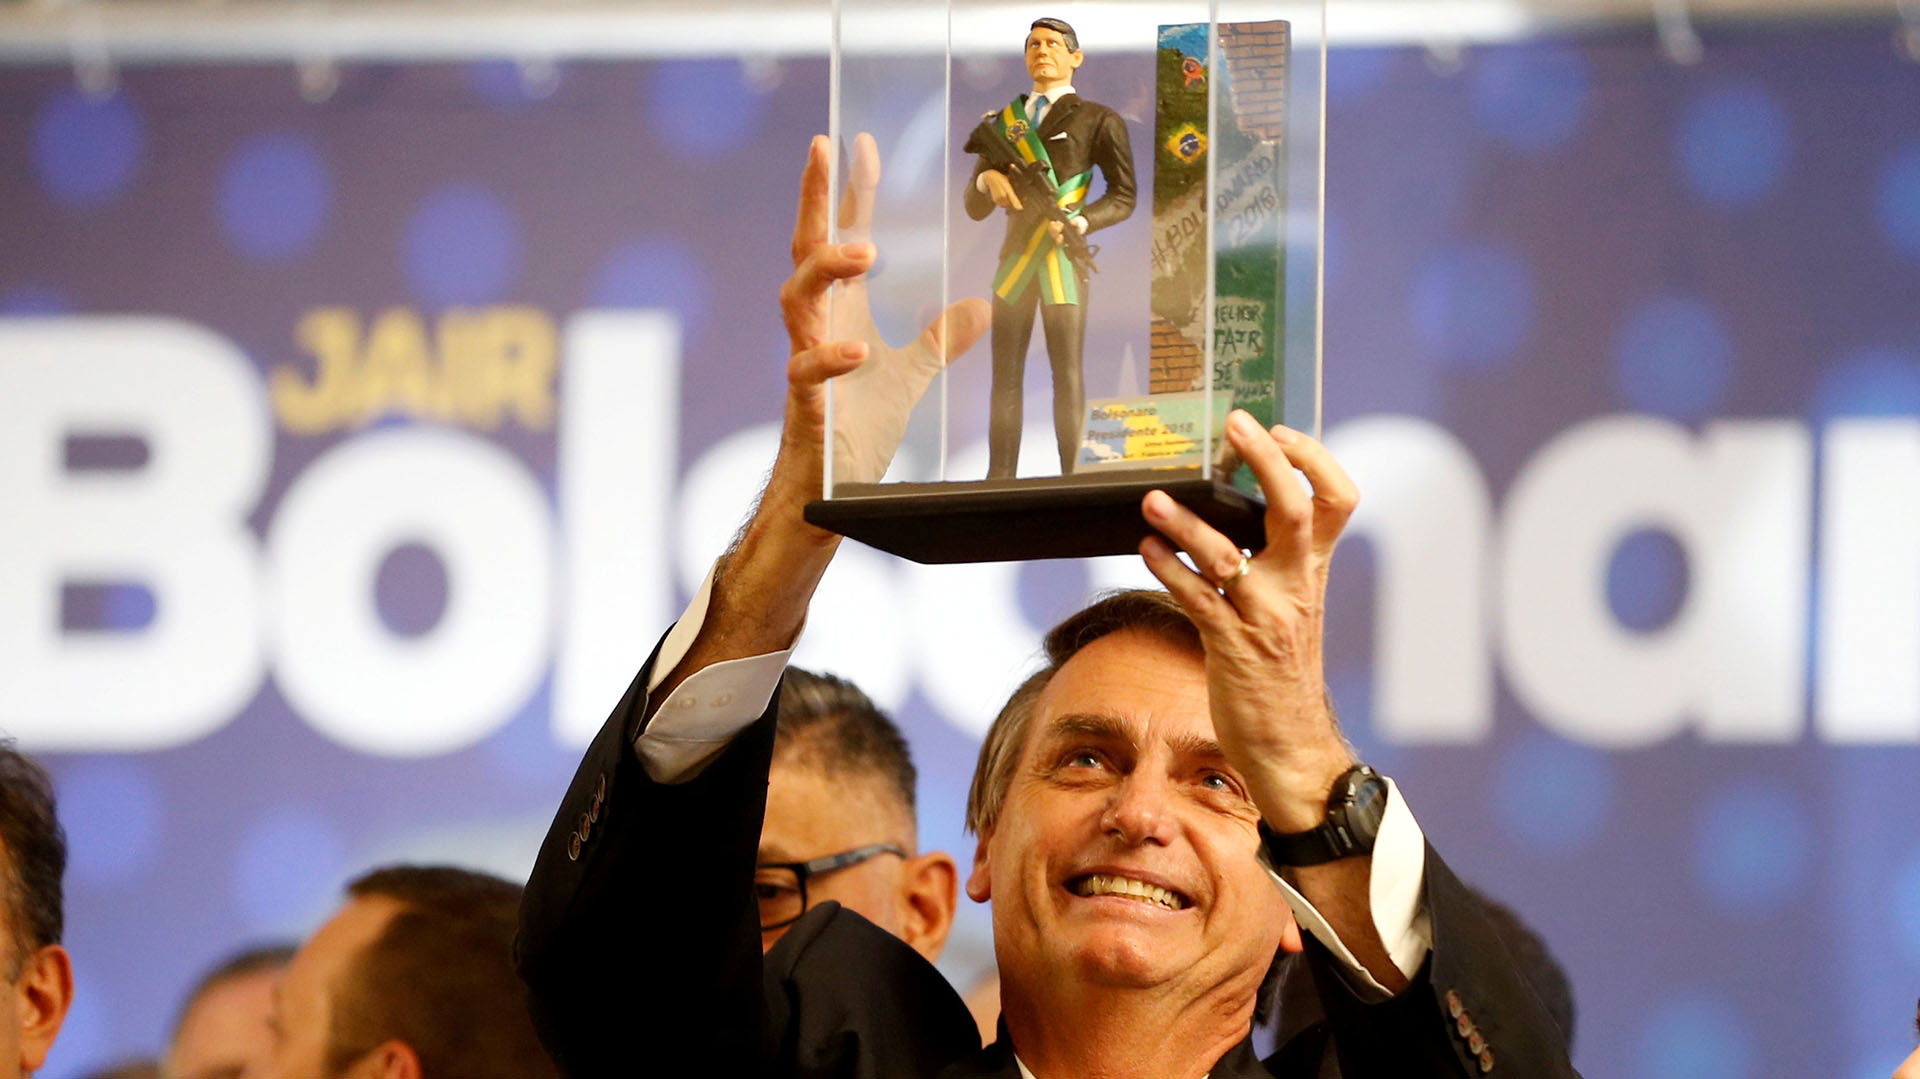 Jair Bolsonaro levanta un muñeco de él con la banda presidencial, sosteniendo un fusil de asalto, durante un acto en Curitiba en marzo pasado (REUTERS/Rodolfo Buhrer/File photo)